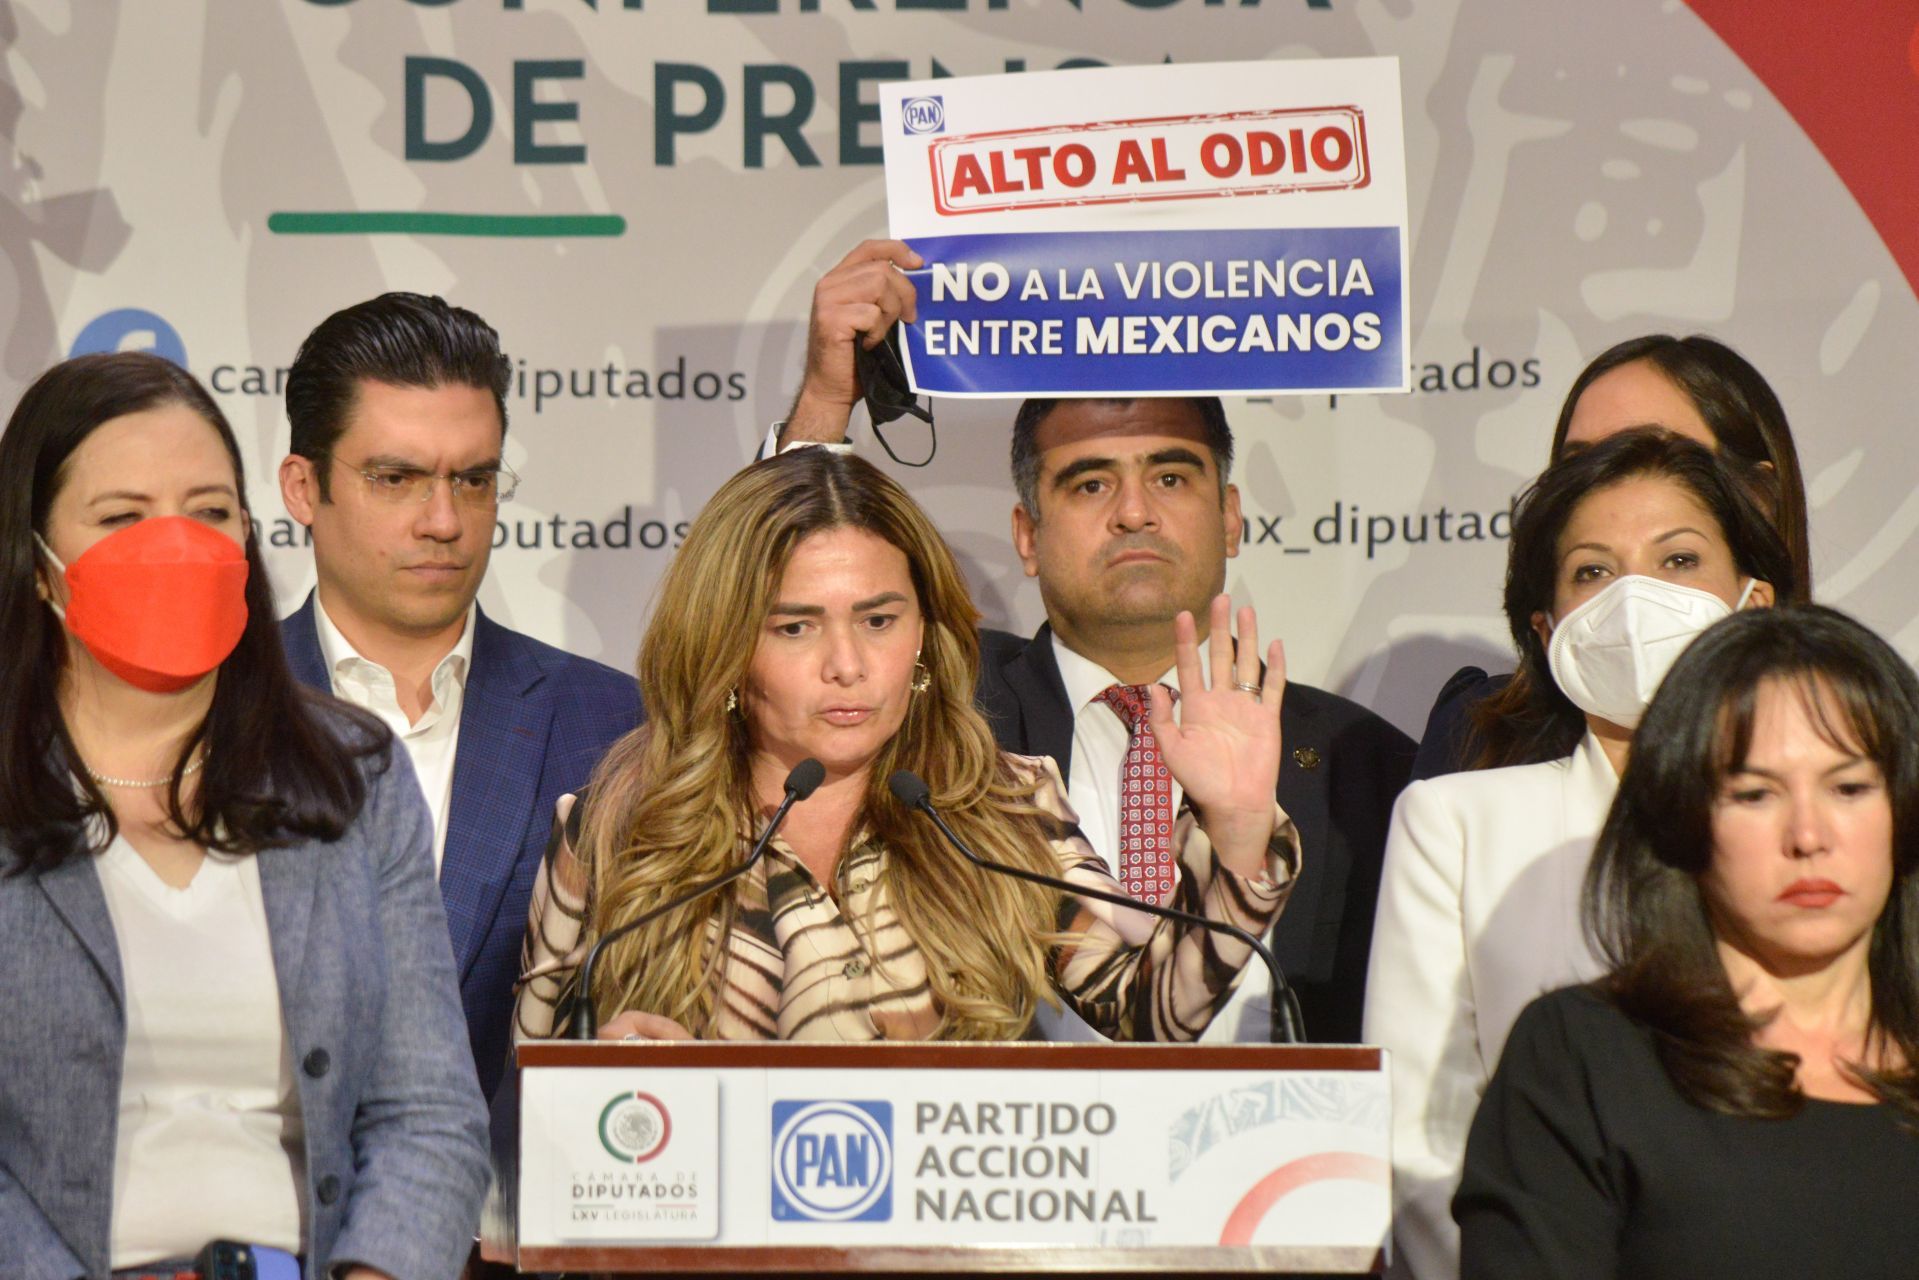 Los partidos de oposición han acusado campaña negra en su contra
FOTO: MARIO JASSO/CUARTOSCURO.COM